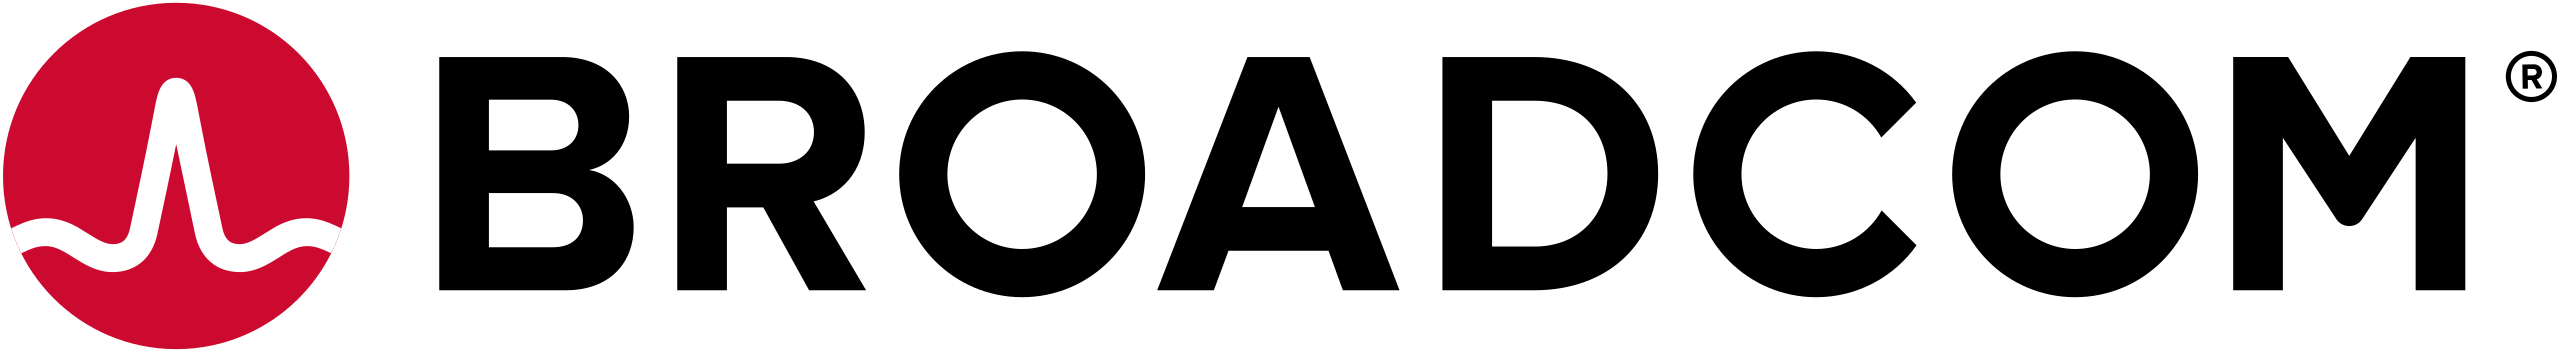 Broadcom_Ltd_Logo.svg